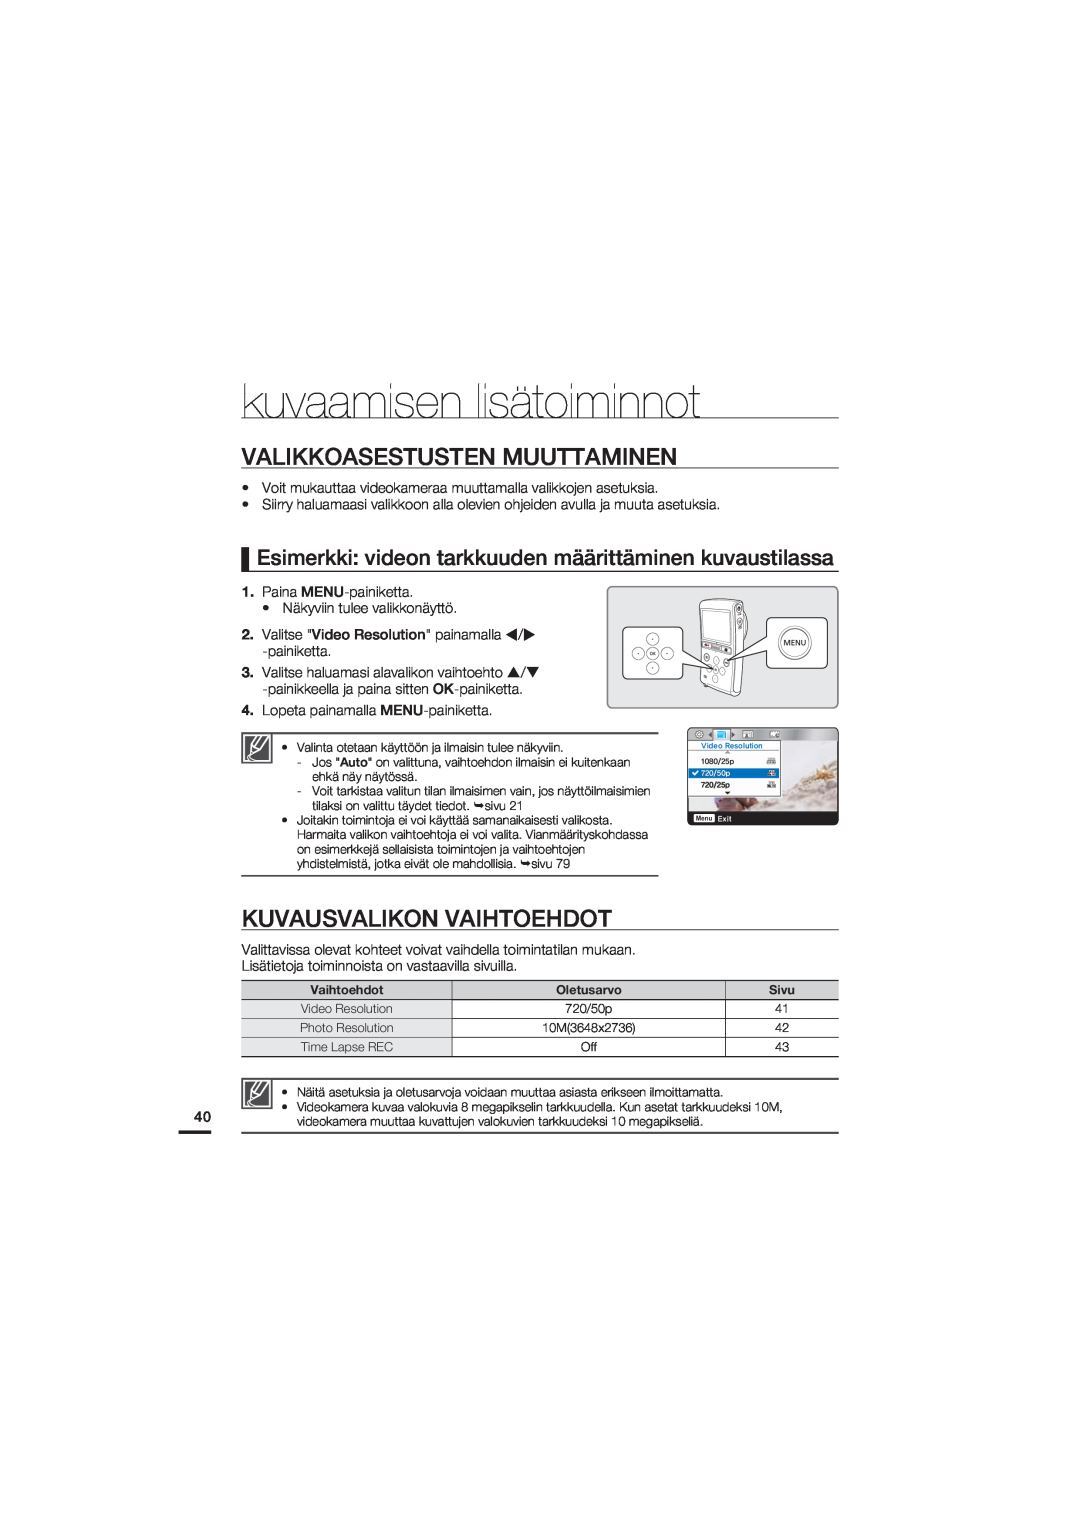 Samsung HMX-U20BP/EDC manual kuvaamisen lisätoiminnot, Valikkoasestusten Muuttaminen, Kuvausvalikon Vaihtoehdot 